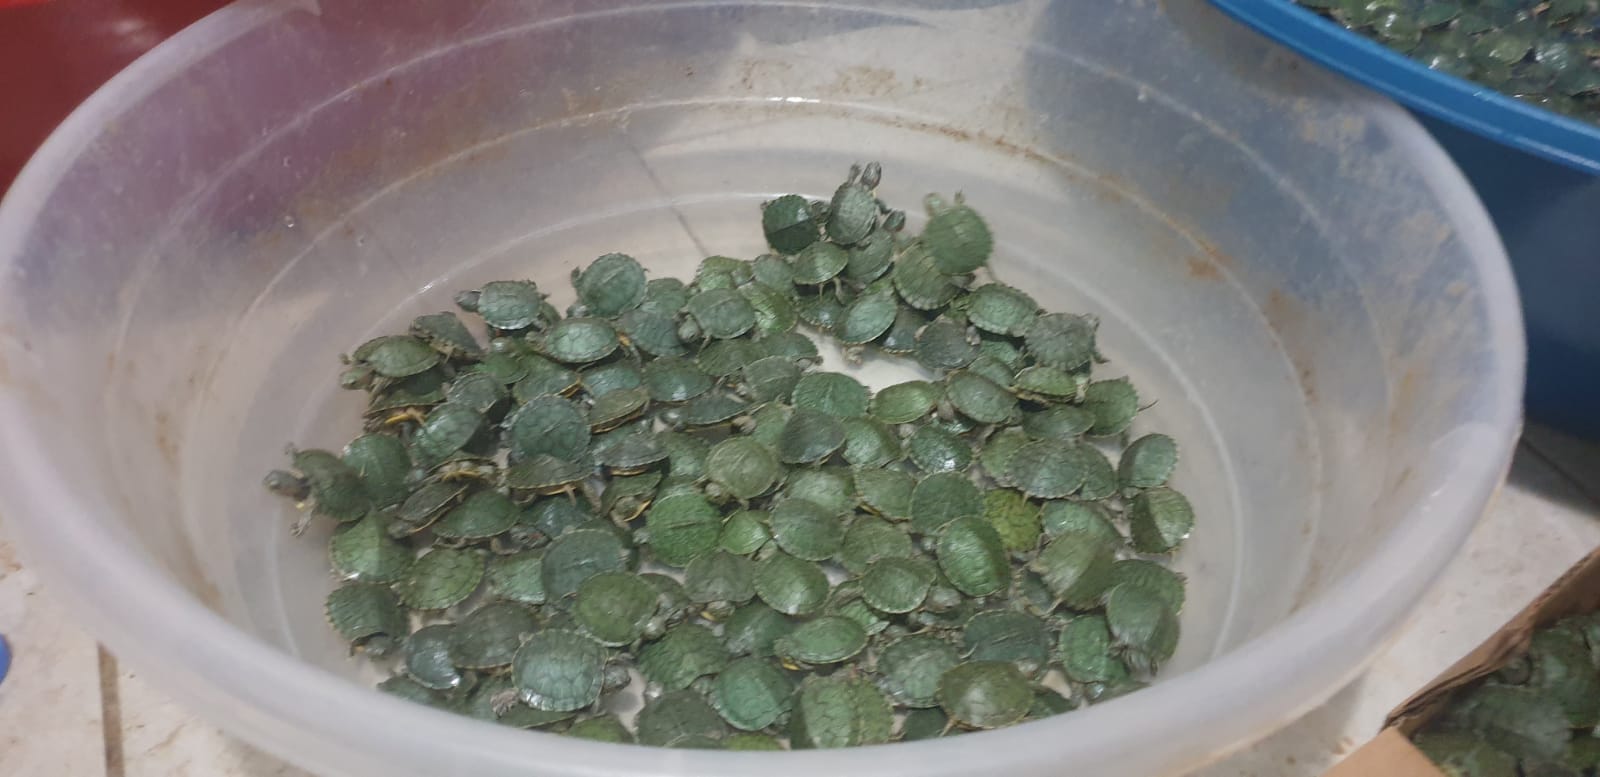 Şırnak'ta 1000 su kaplumbağası ele geçirildi